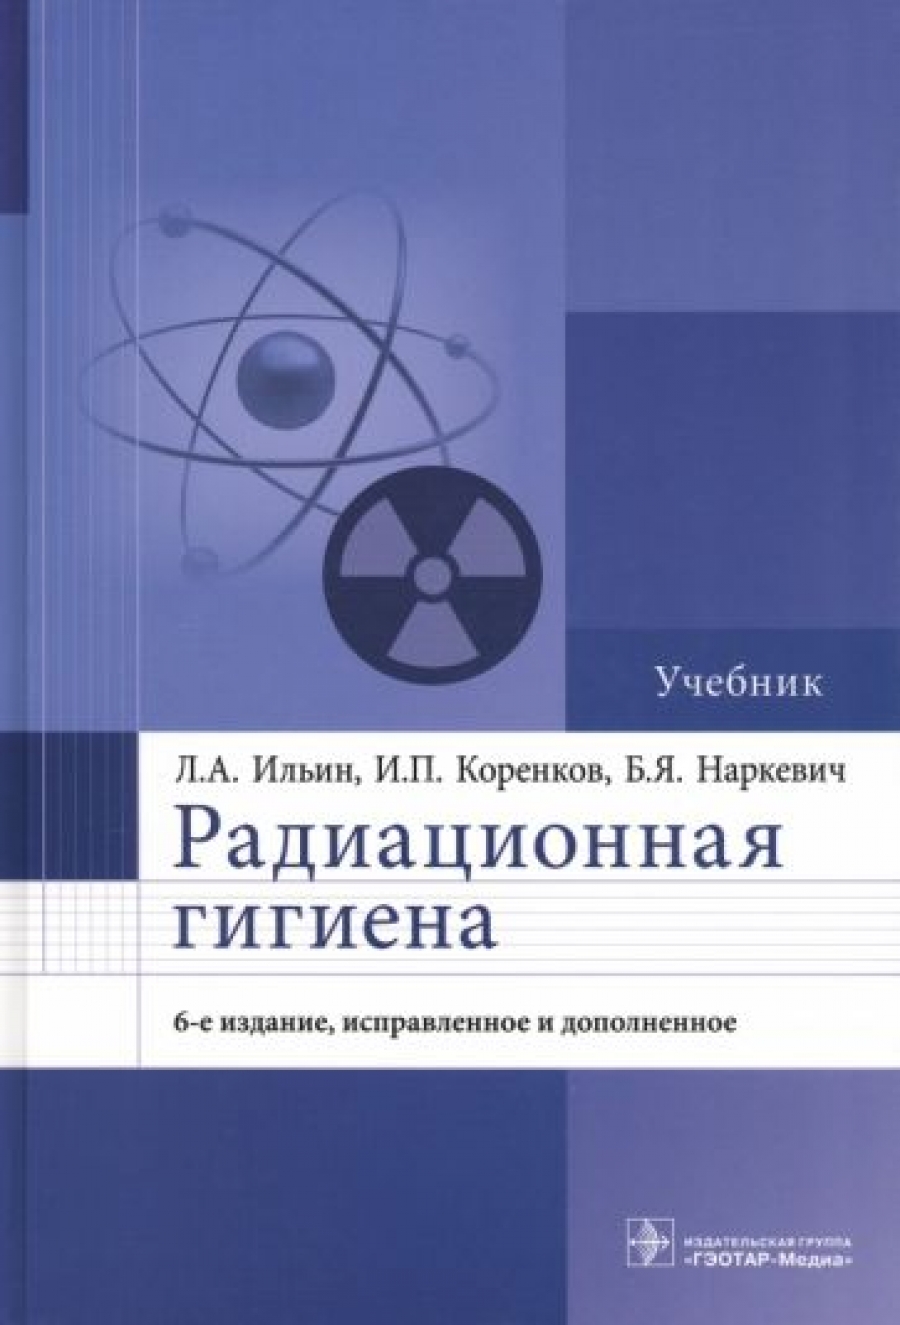 Наркевич Б.Я., Коренков И.П., Ильин Л.А. Радиационная гигиена : учебник 